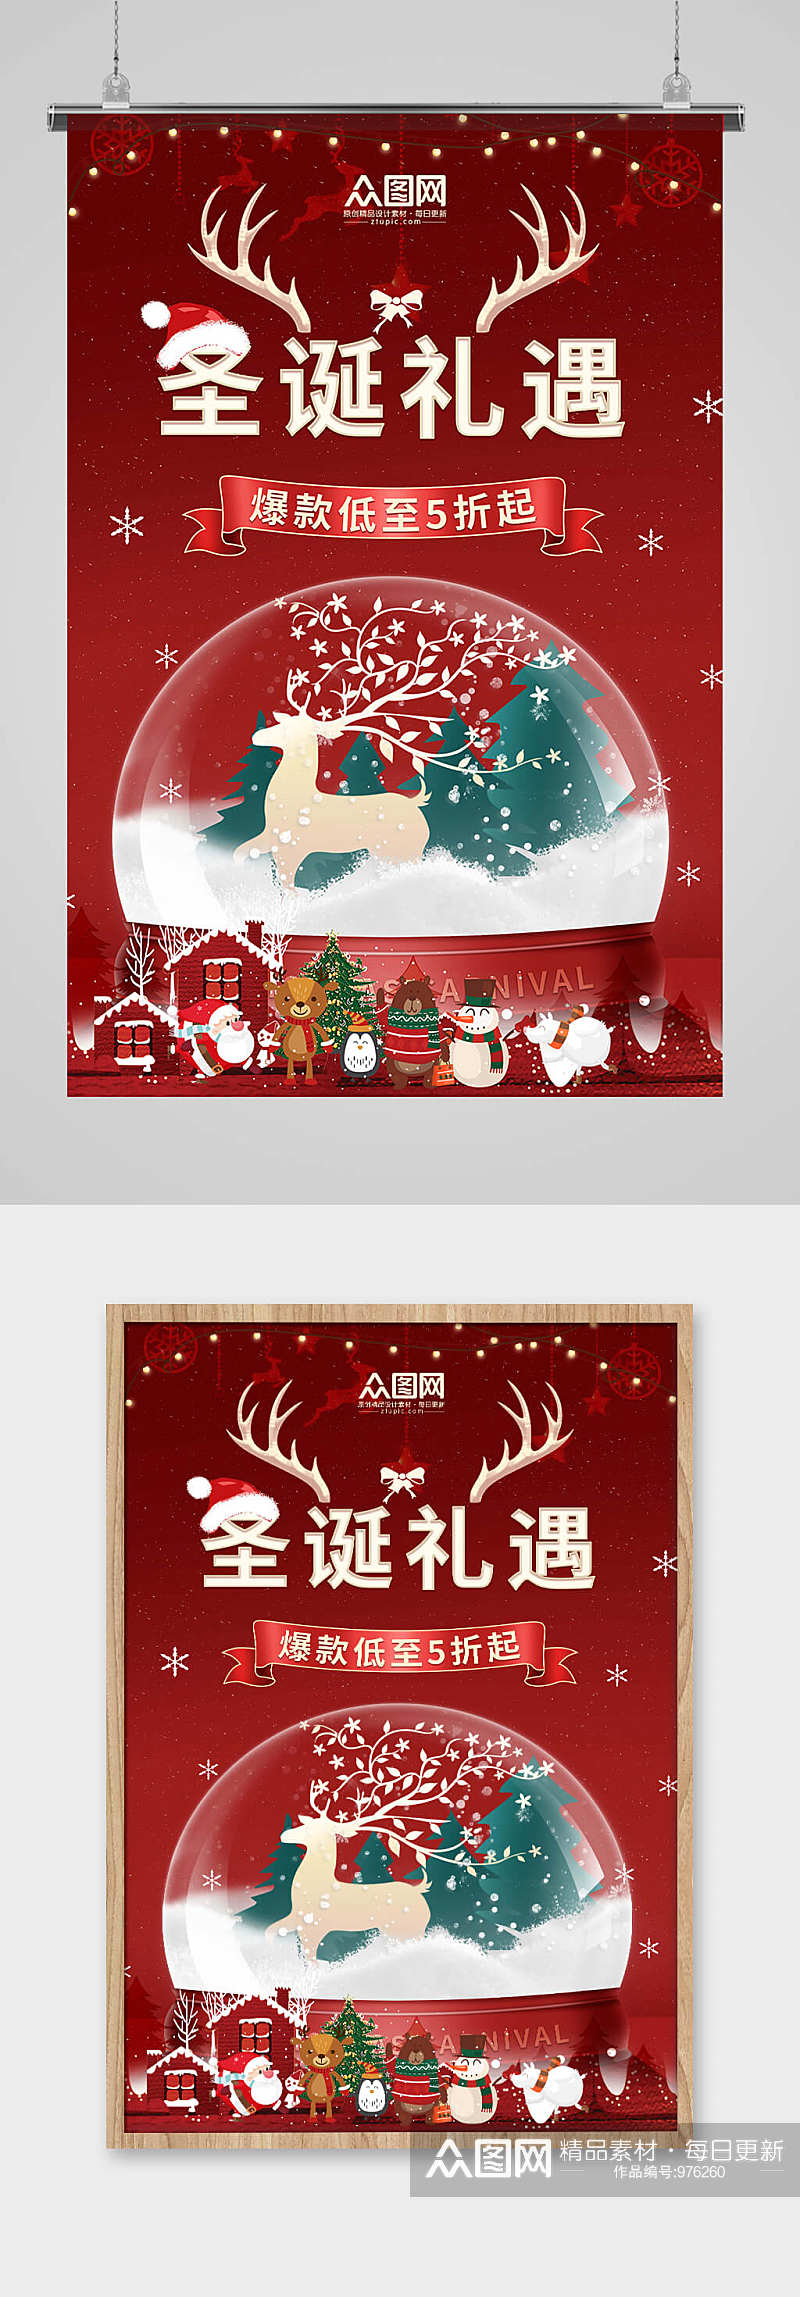 红色欢乐圣诞节 水晶球圣诞爆款促销宣传海报素材